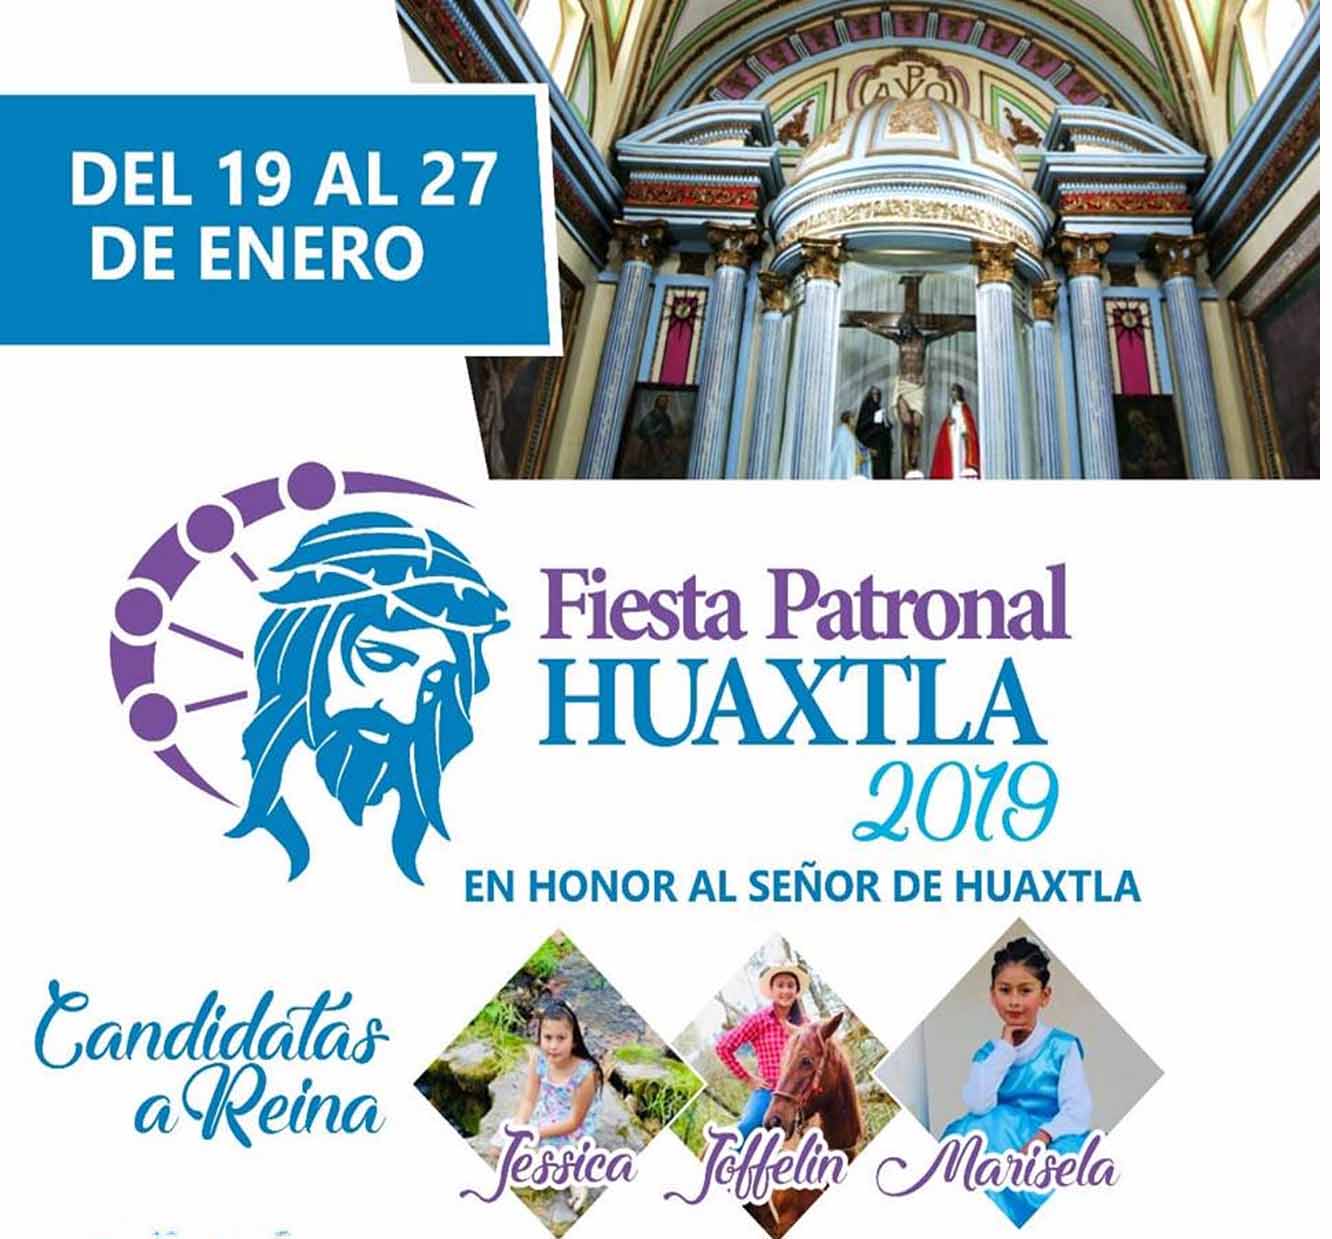 FIESTA PATRONAL HUAXTLA 2019 EN HONOR AL SEOR DE HUAXTLA